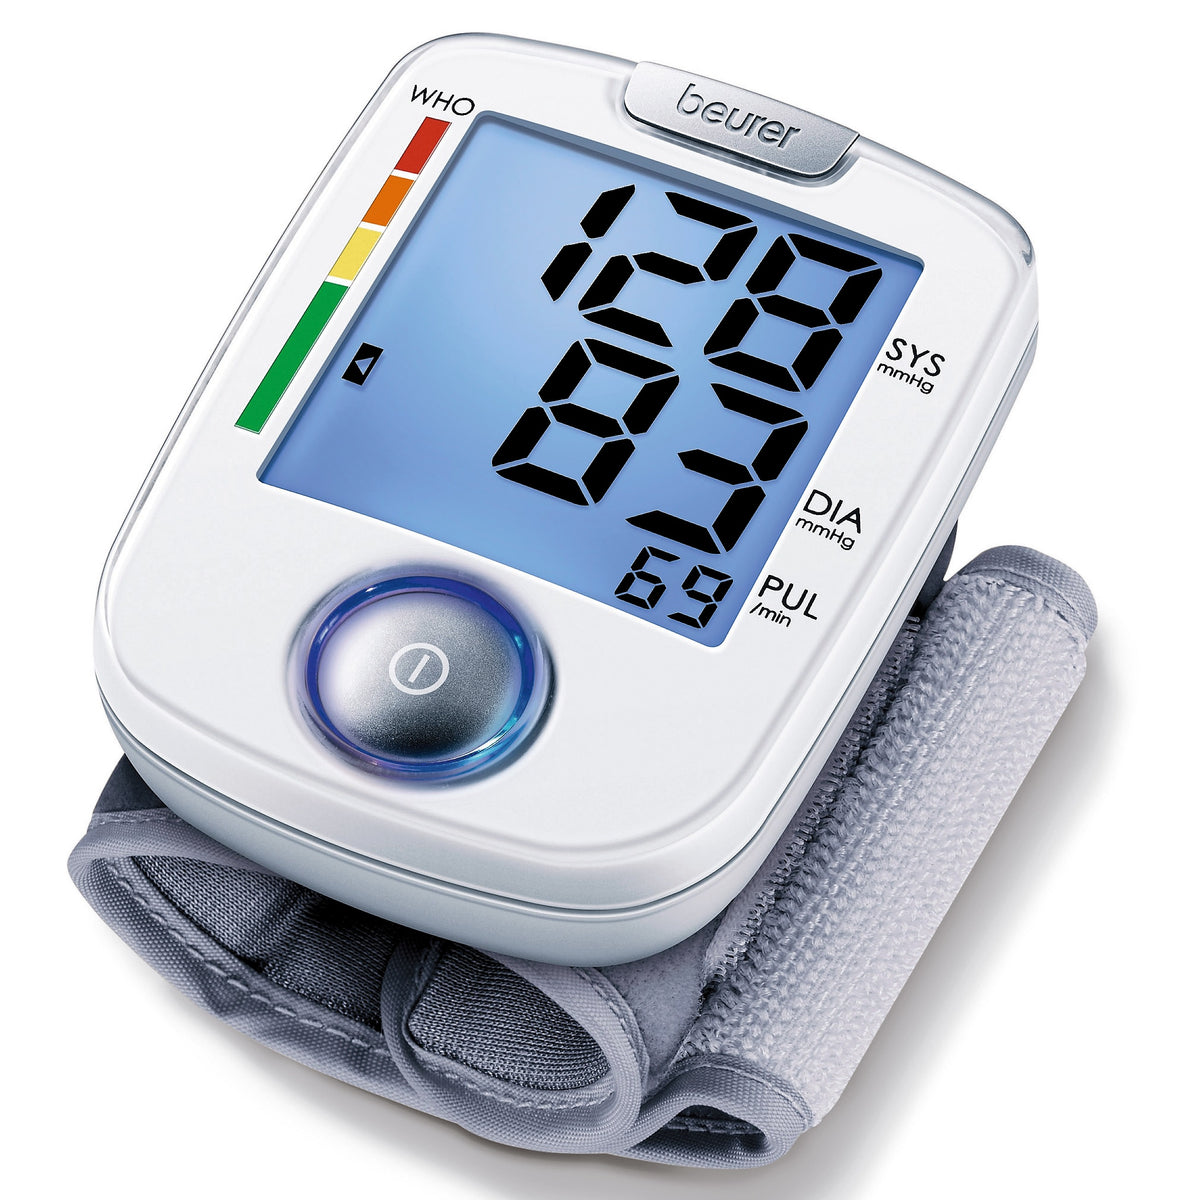 Handgelenk-Blutdruckmessgerät BC 44